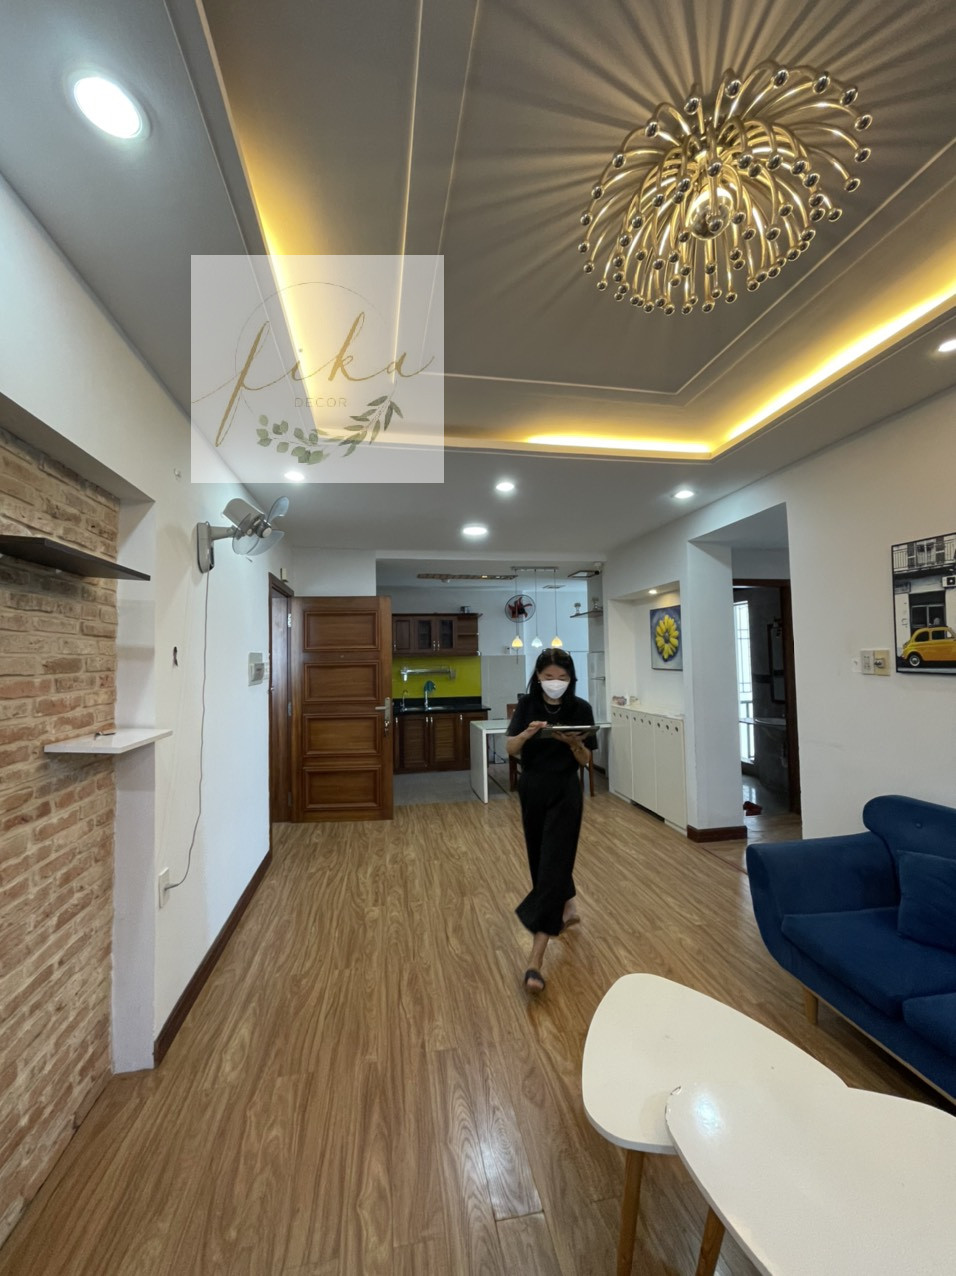 [3/2022] Dự án cải tạo căn hộ cho thuê du lịch tại Quy Nhơn - Before & After 5